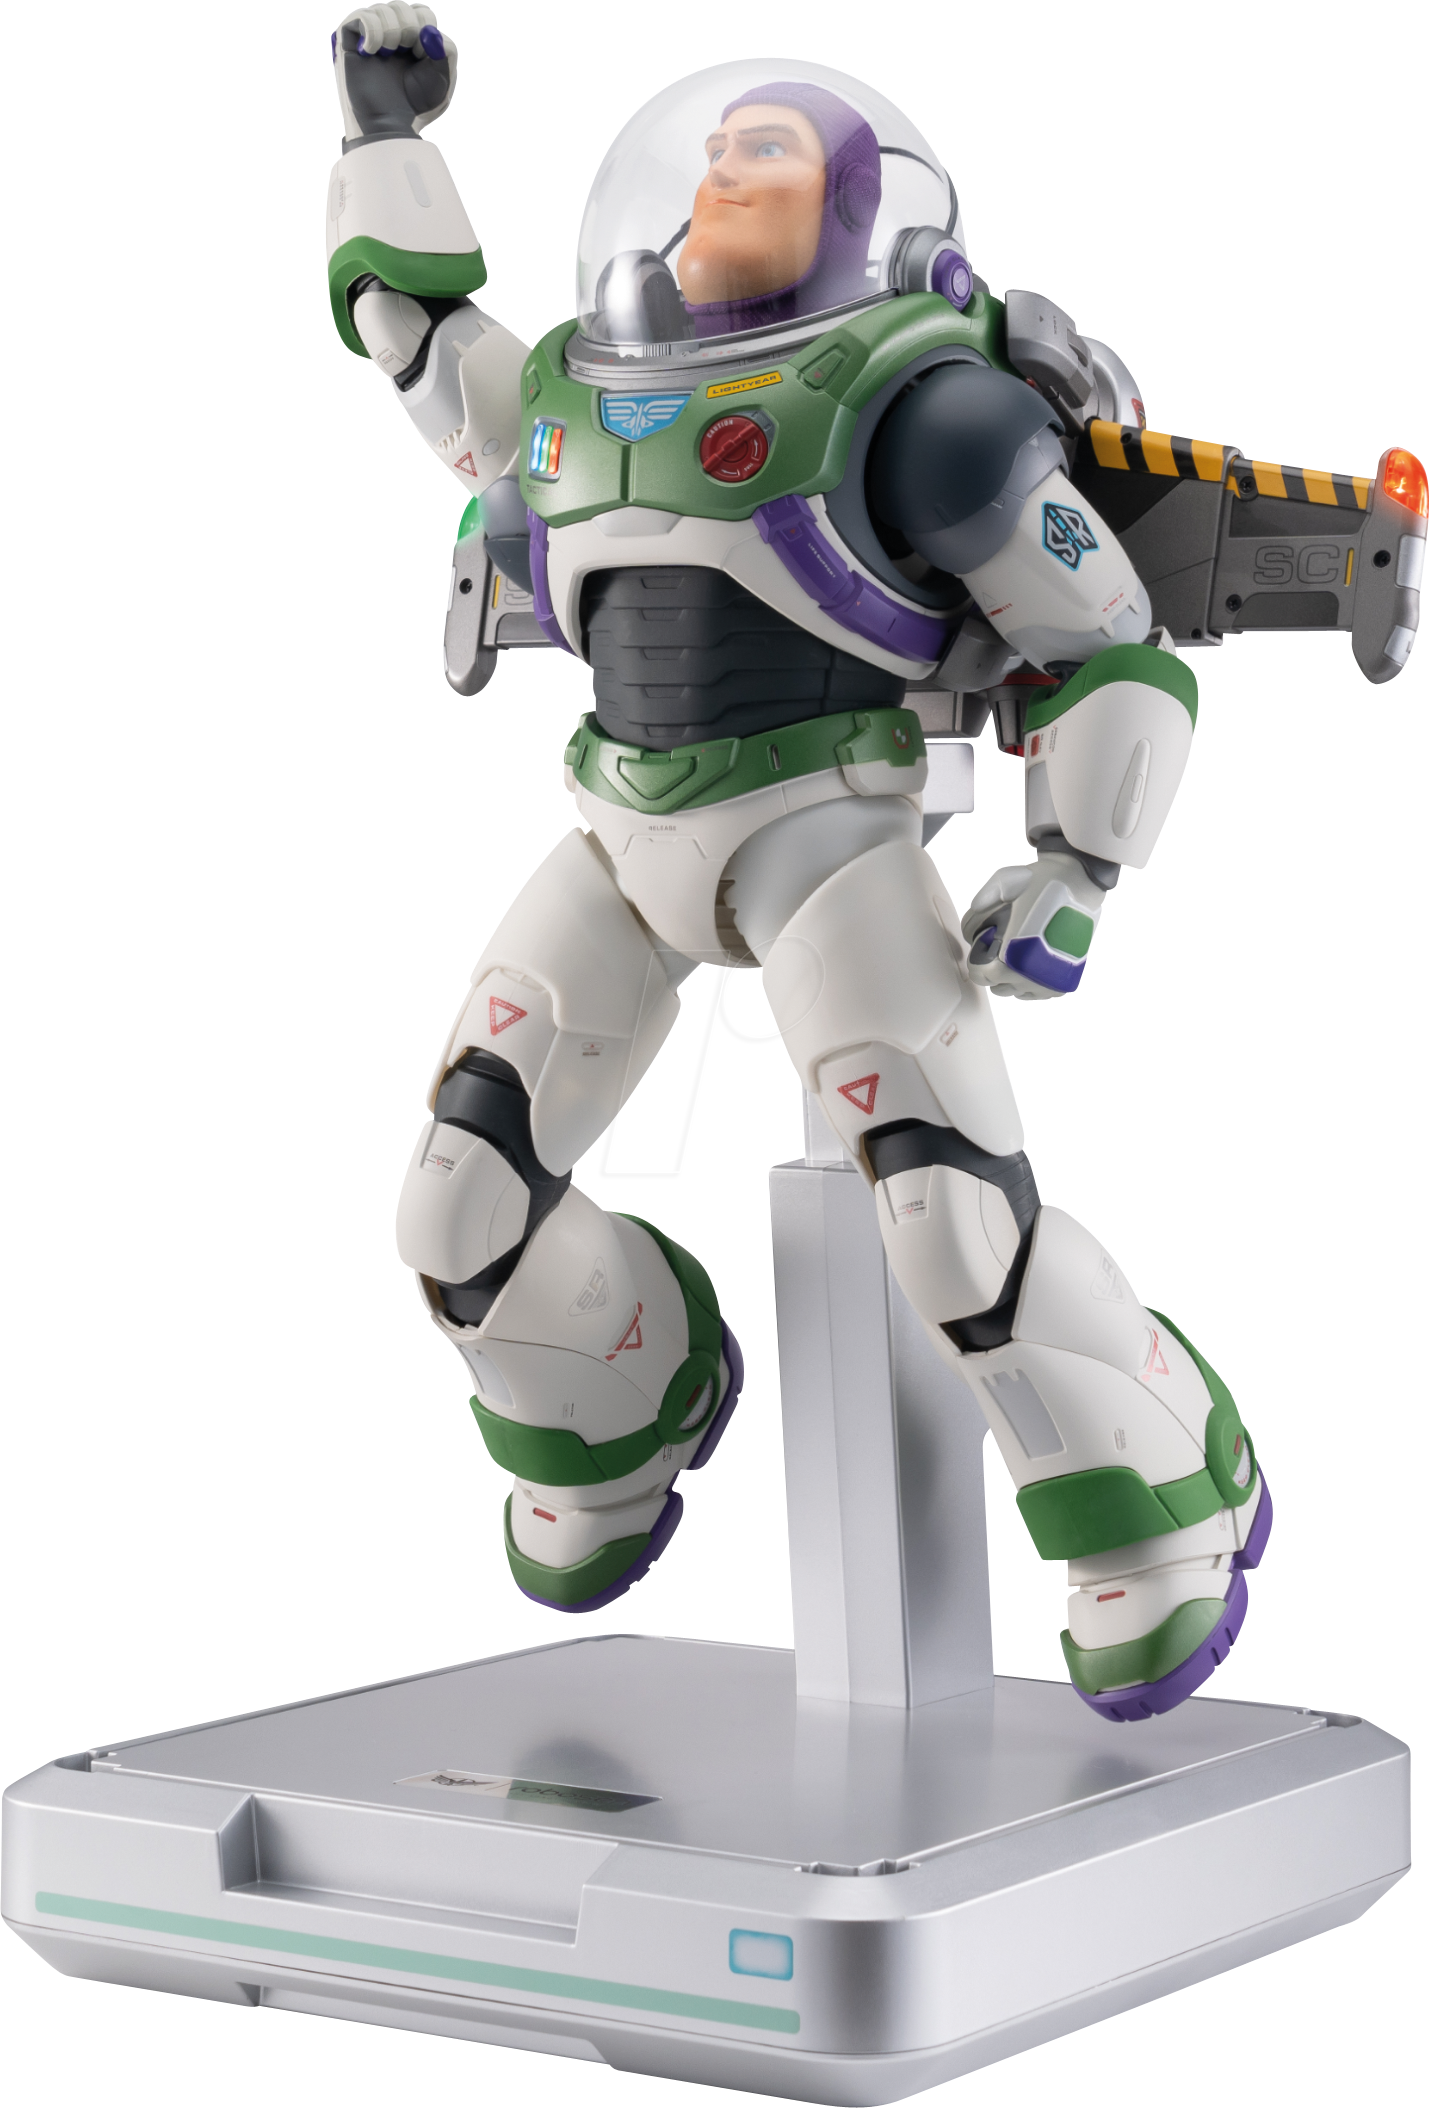 ROBOSEN BSGNM - Buzz Lightyear Roboter, Space Ranger Alpha